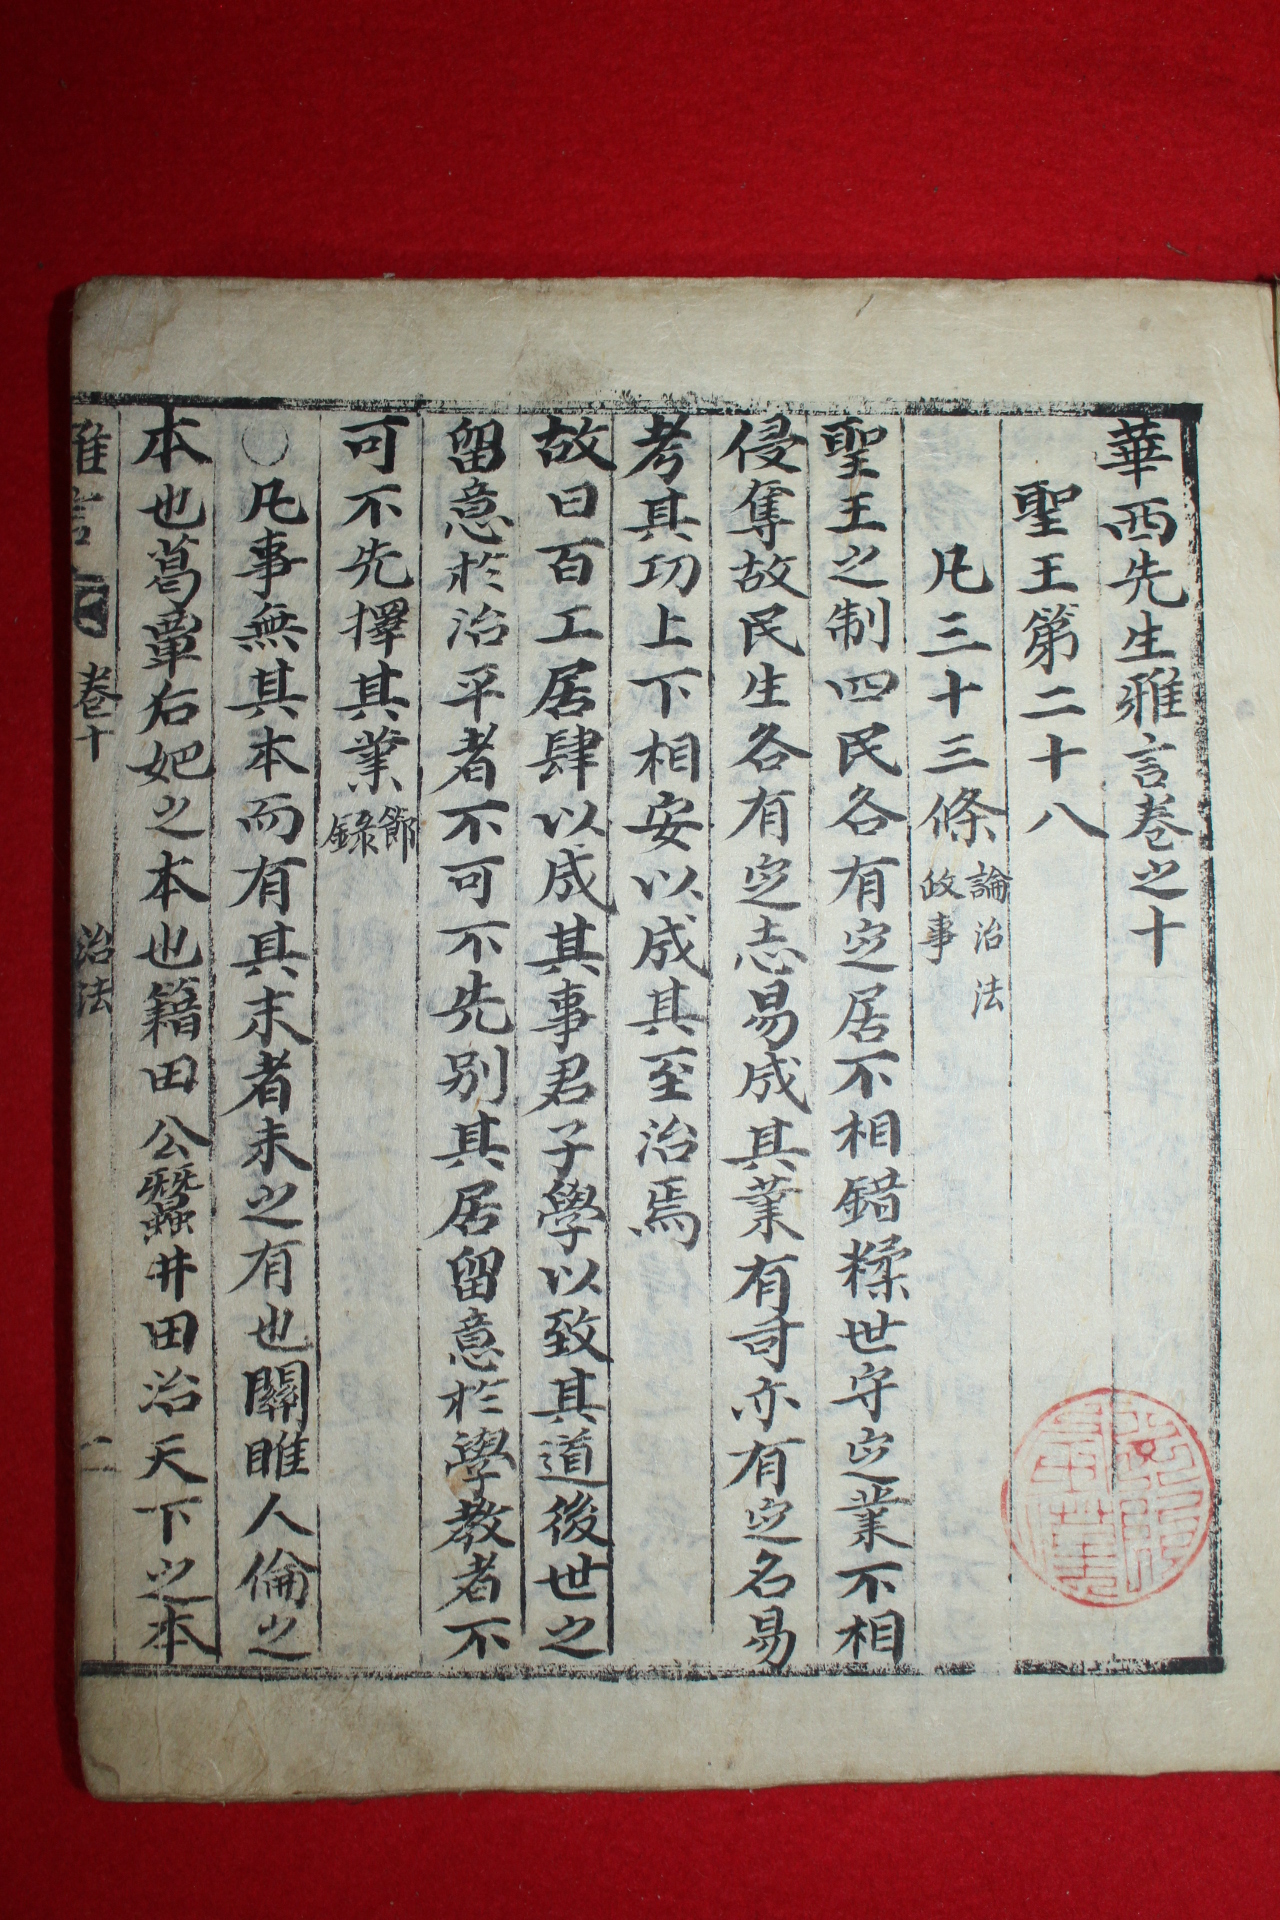 조선시대 고필사본 화서선생아언(華西先生雅言) 2책